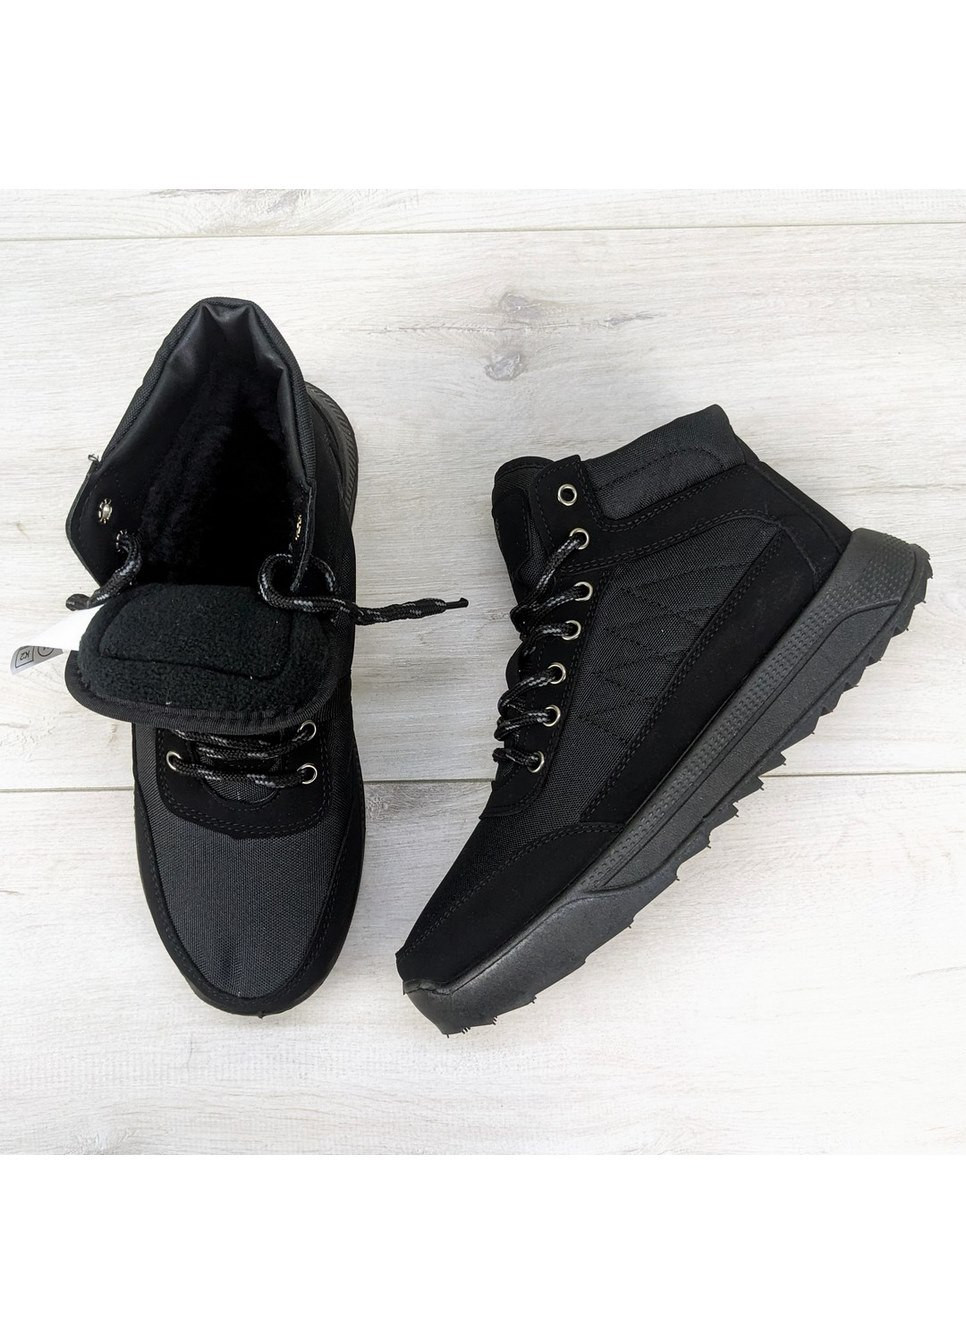 Черные зимние ботинки мужские зимние на шнурках Progress